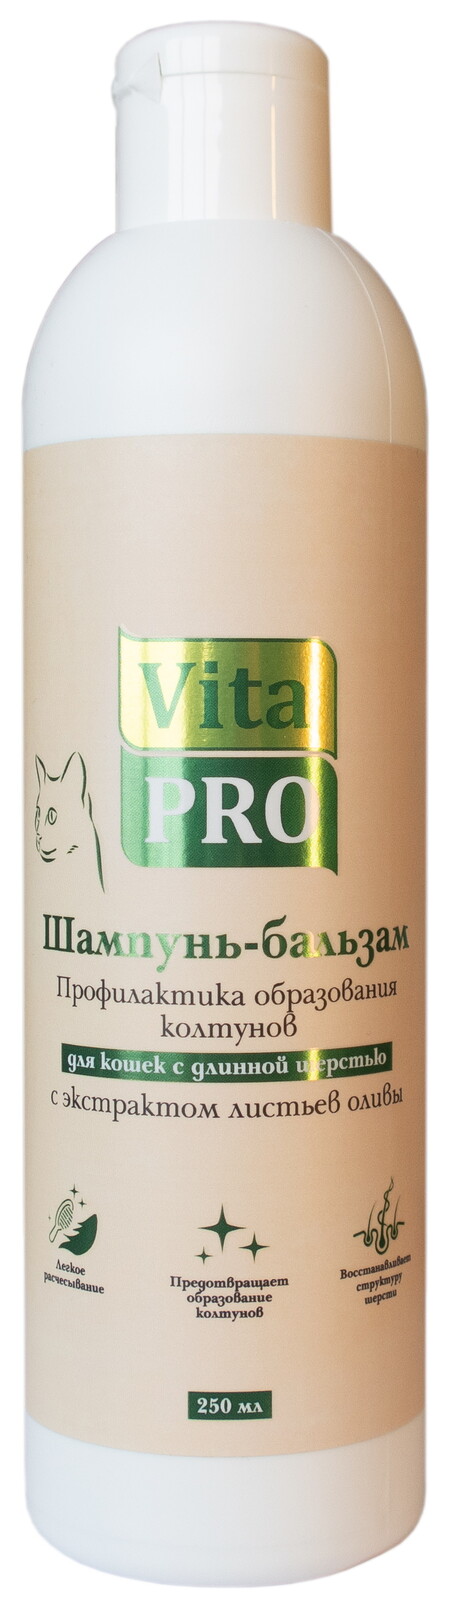 Vita Pro Профилактика колтунов 250 мл шампунь-бальзам для кошек с длинной шерстью с экстрактом листьев оливы